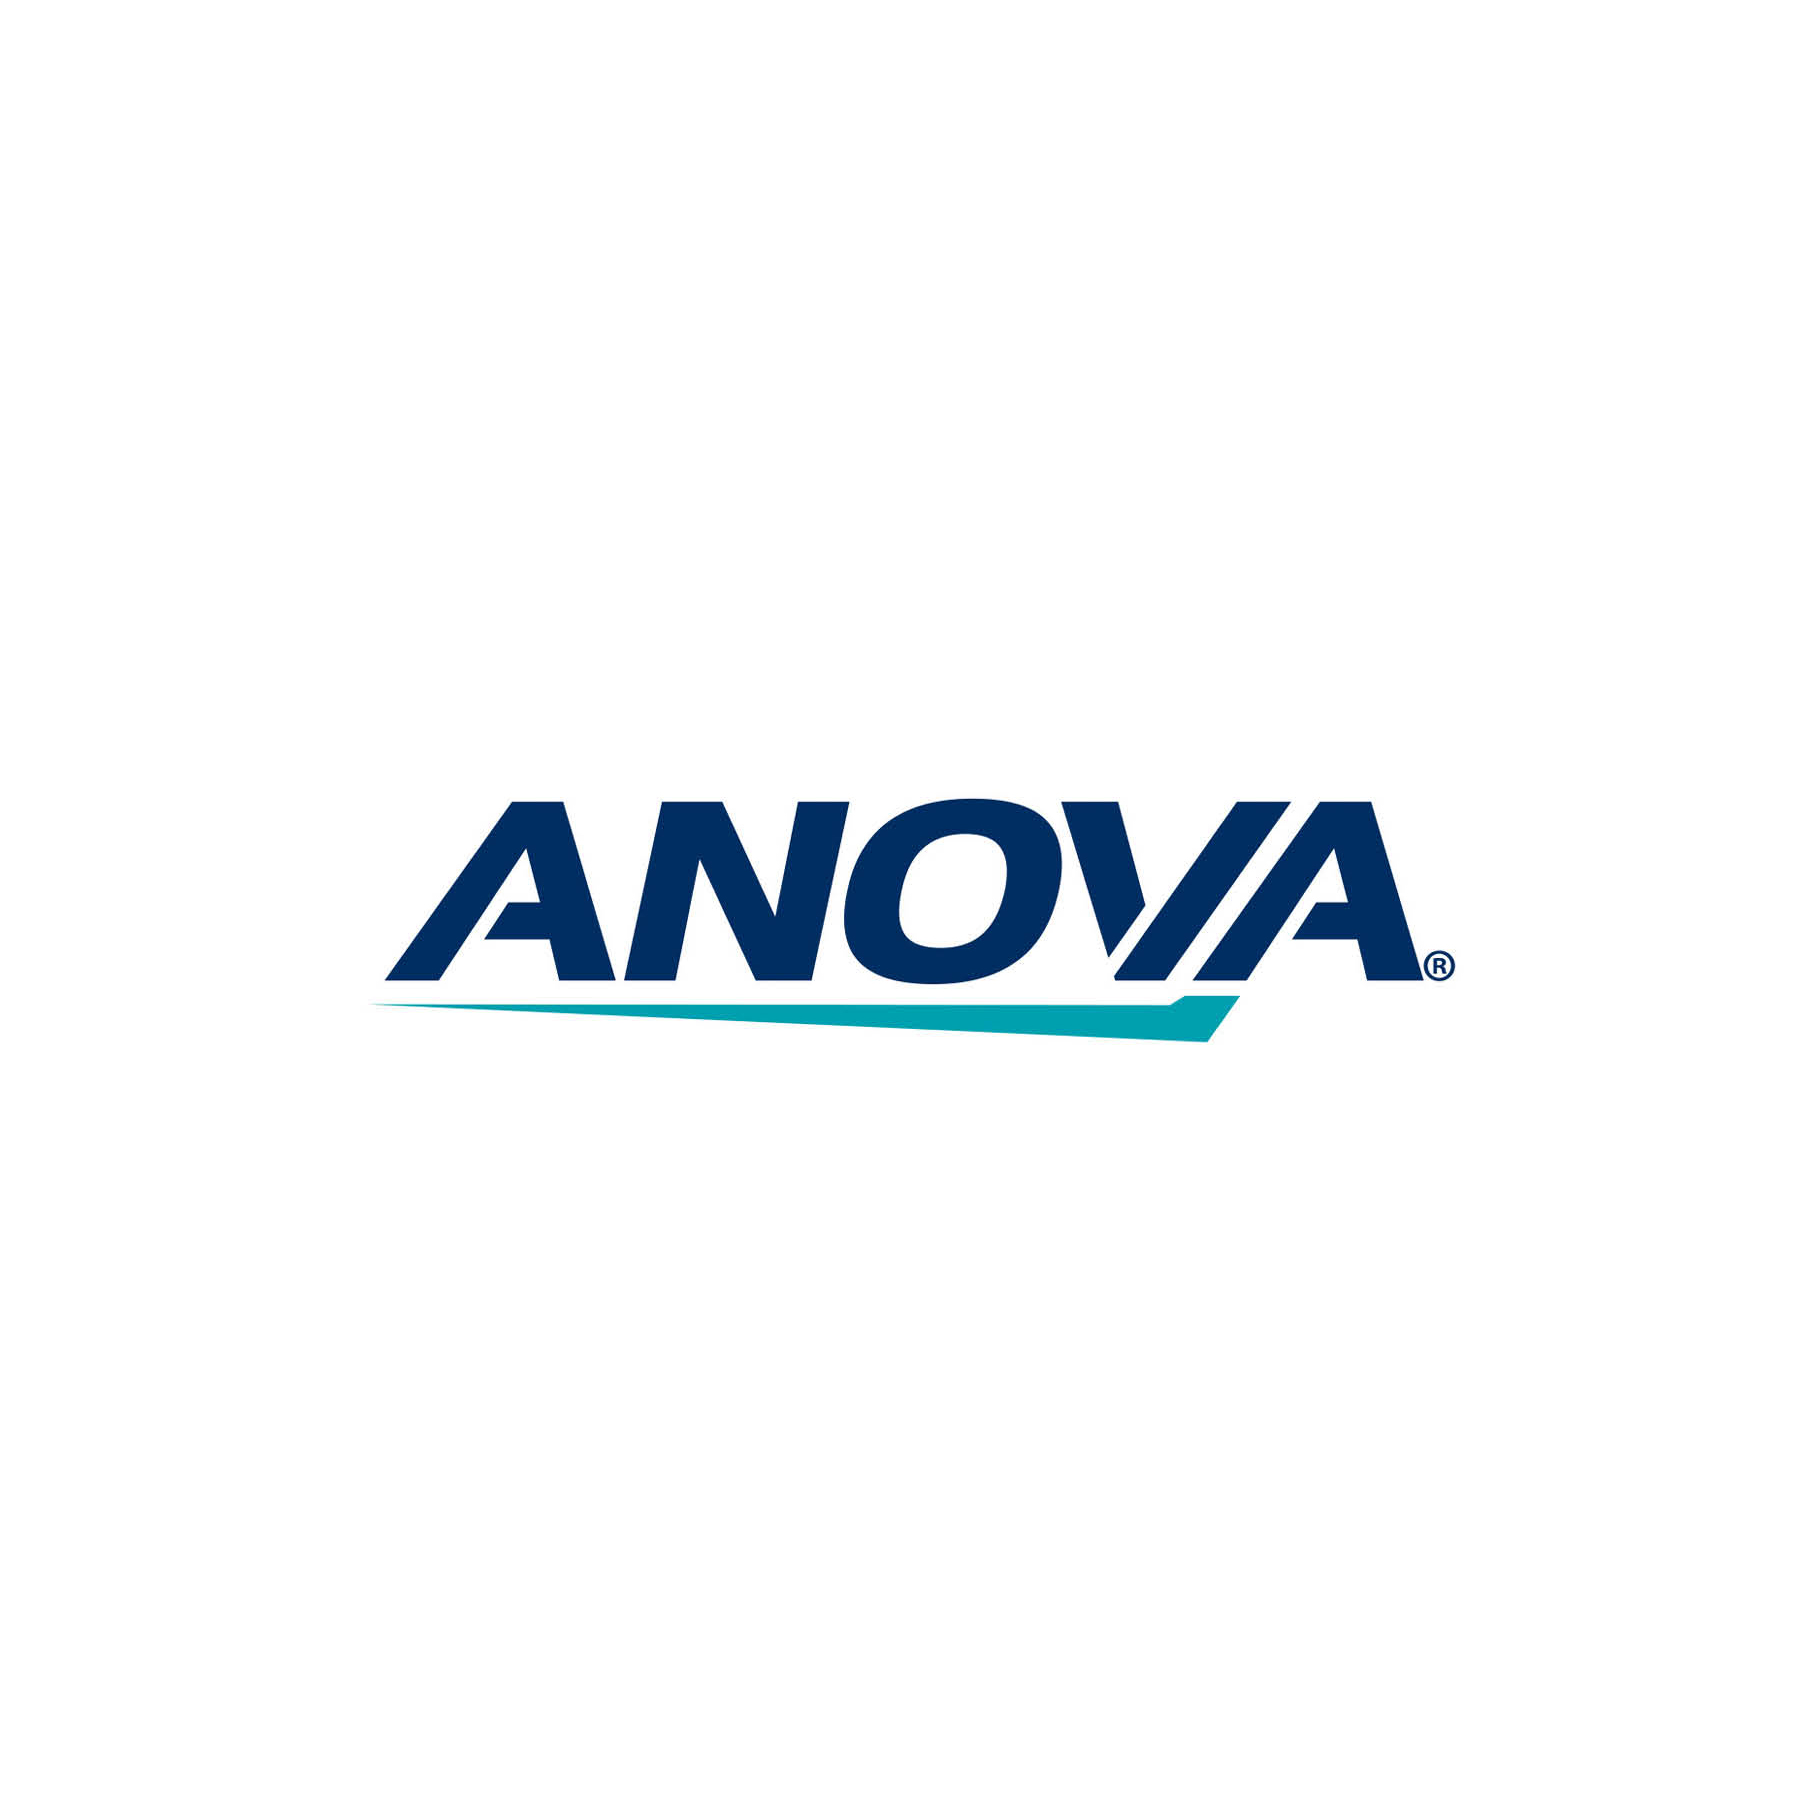 ANOVA logo